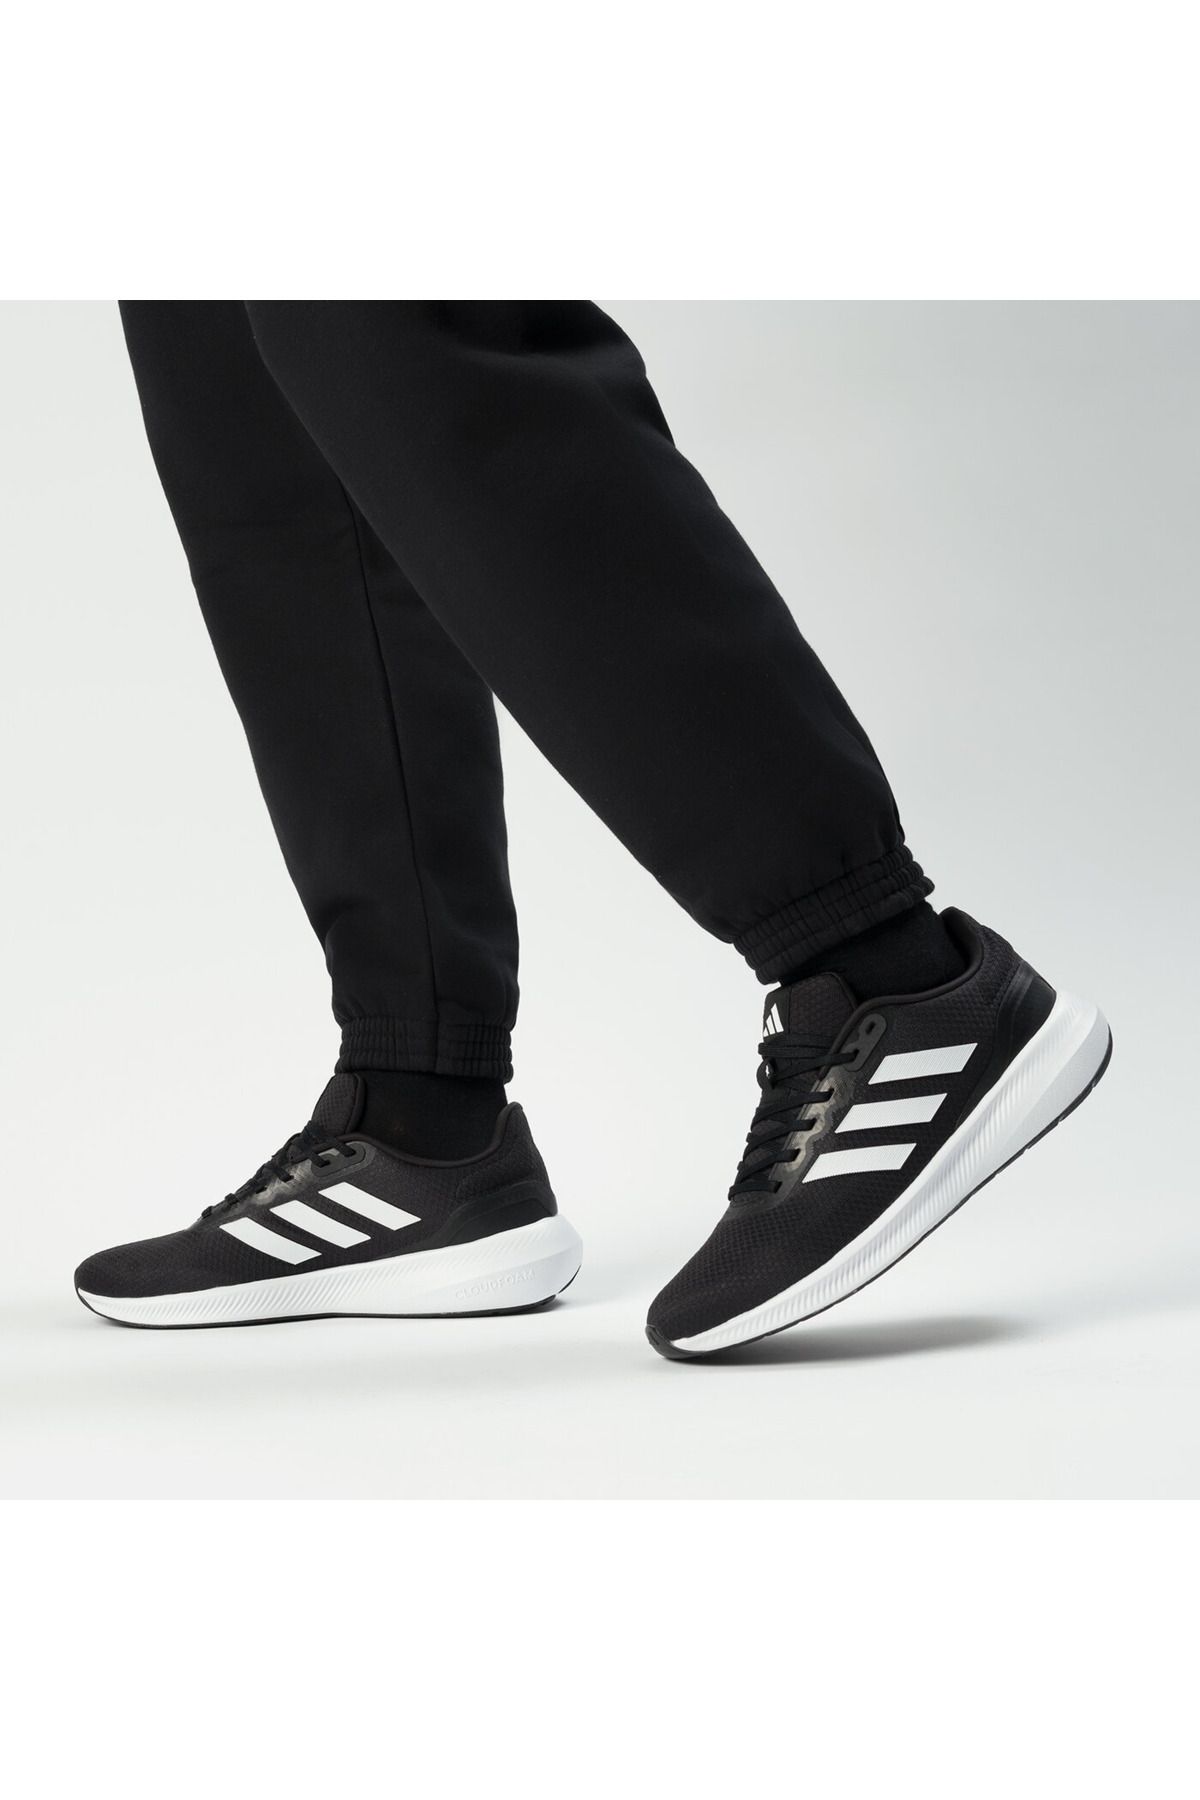 adidas Günlük Rahat Taban Hafif Esnek Yürüyüş Koşu Ayakkabısı Unisex Spor Ayakkabı Sneaker